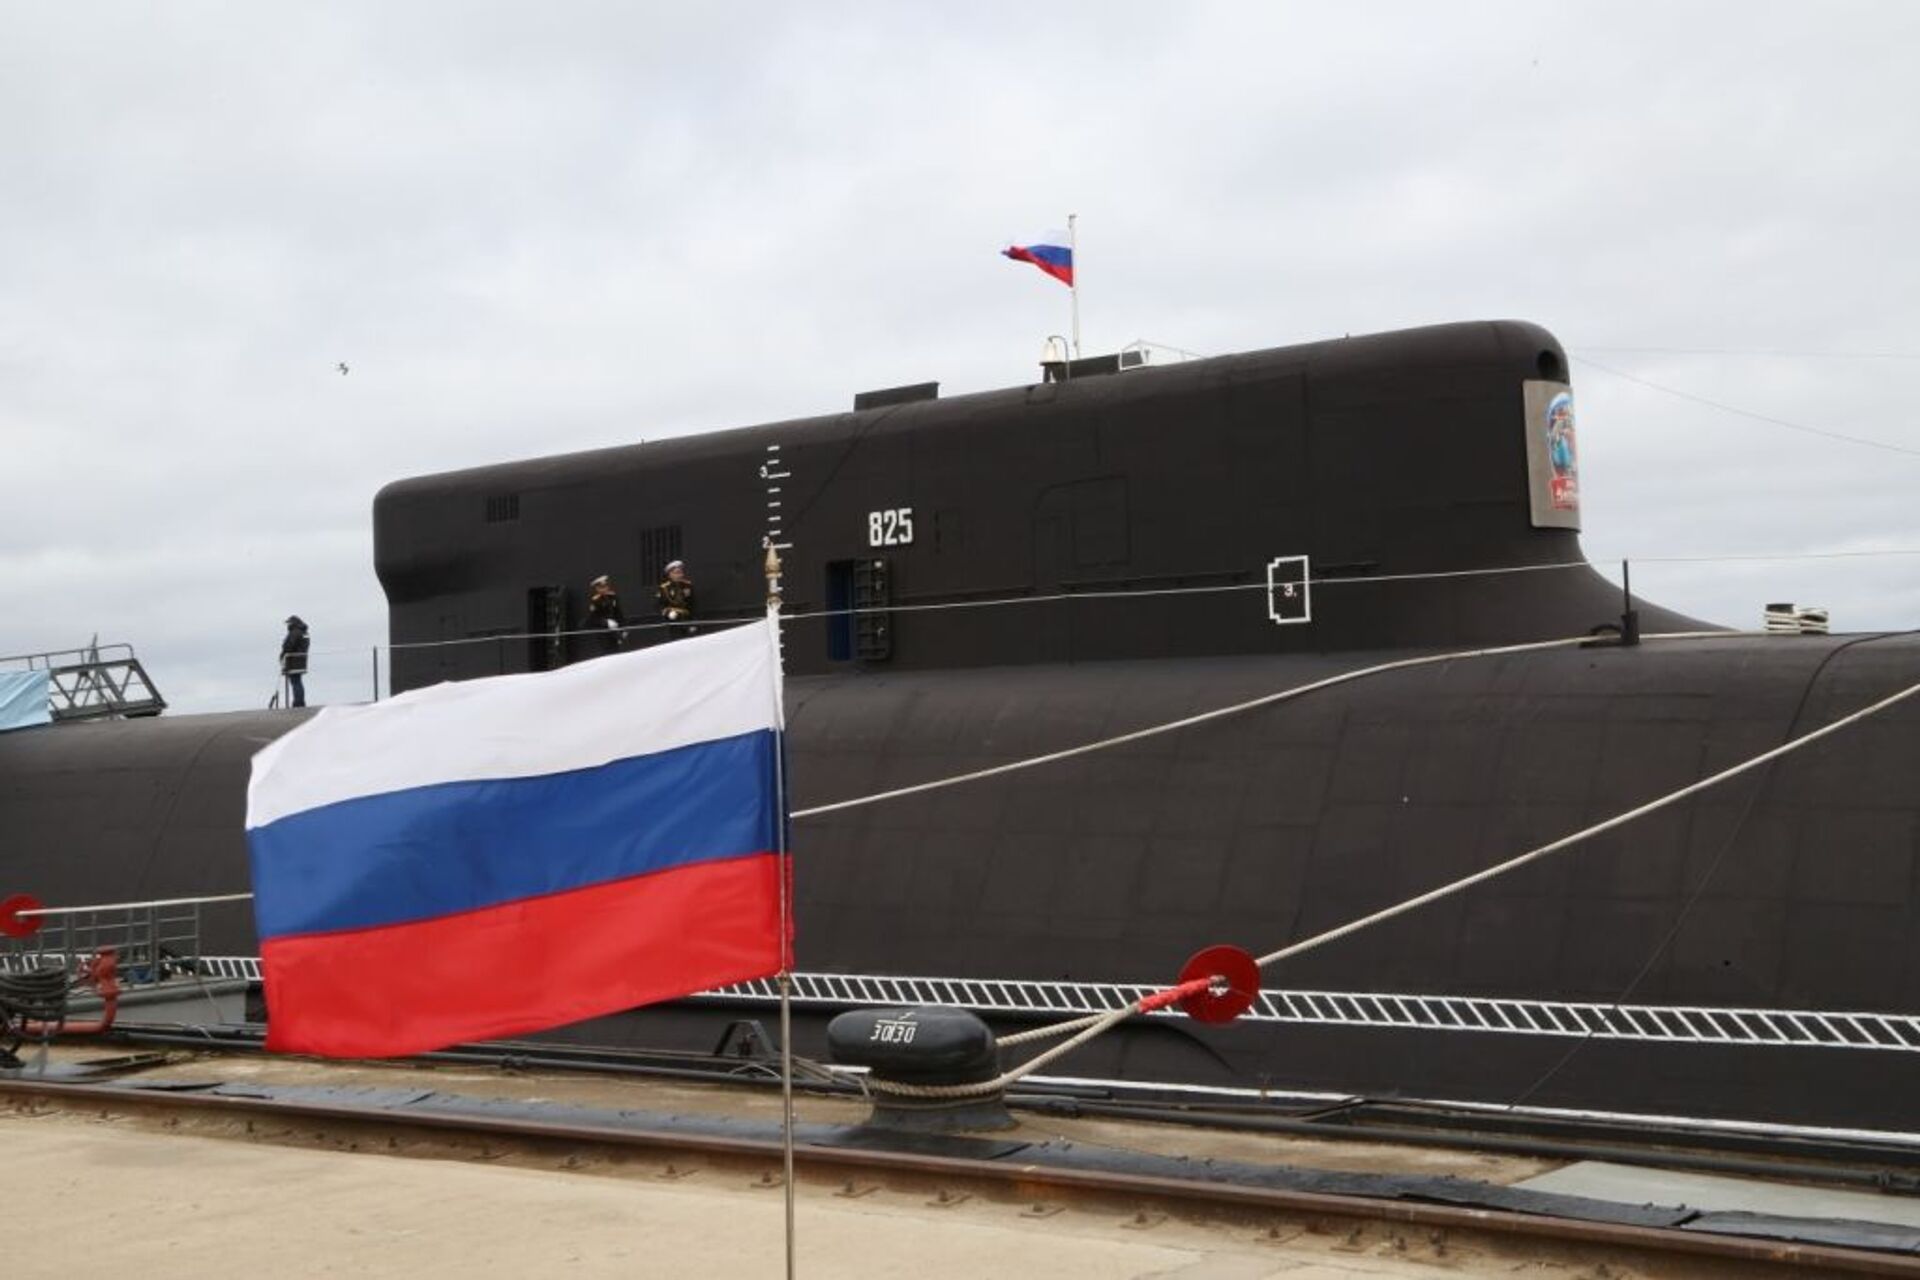 Novíssimos sistemas hipersônicos da Marinha da Rússia não têm análogos no mundo, diz Putin - Sputnik Brasil, 1920, 25.07.2021